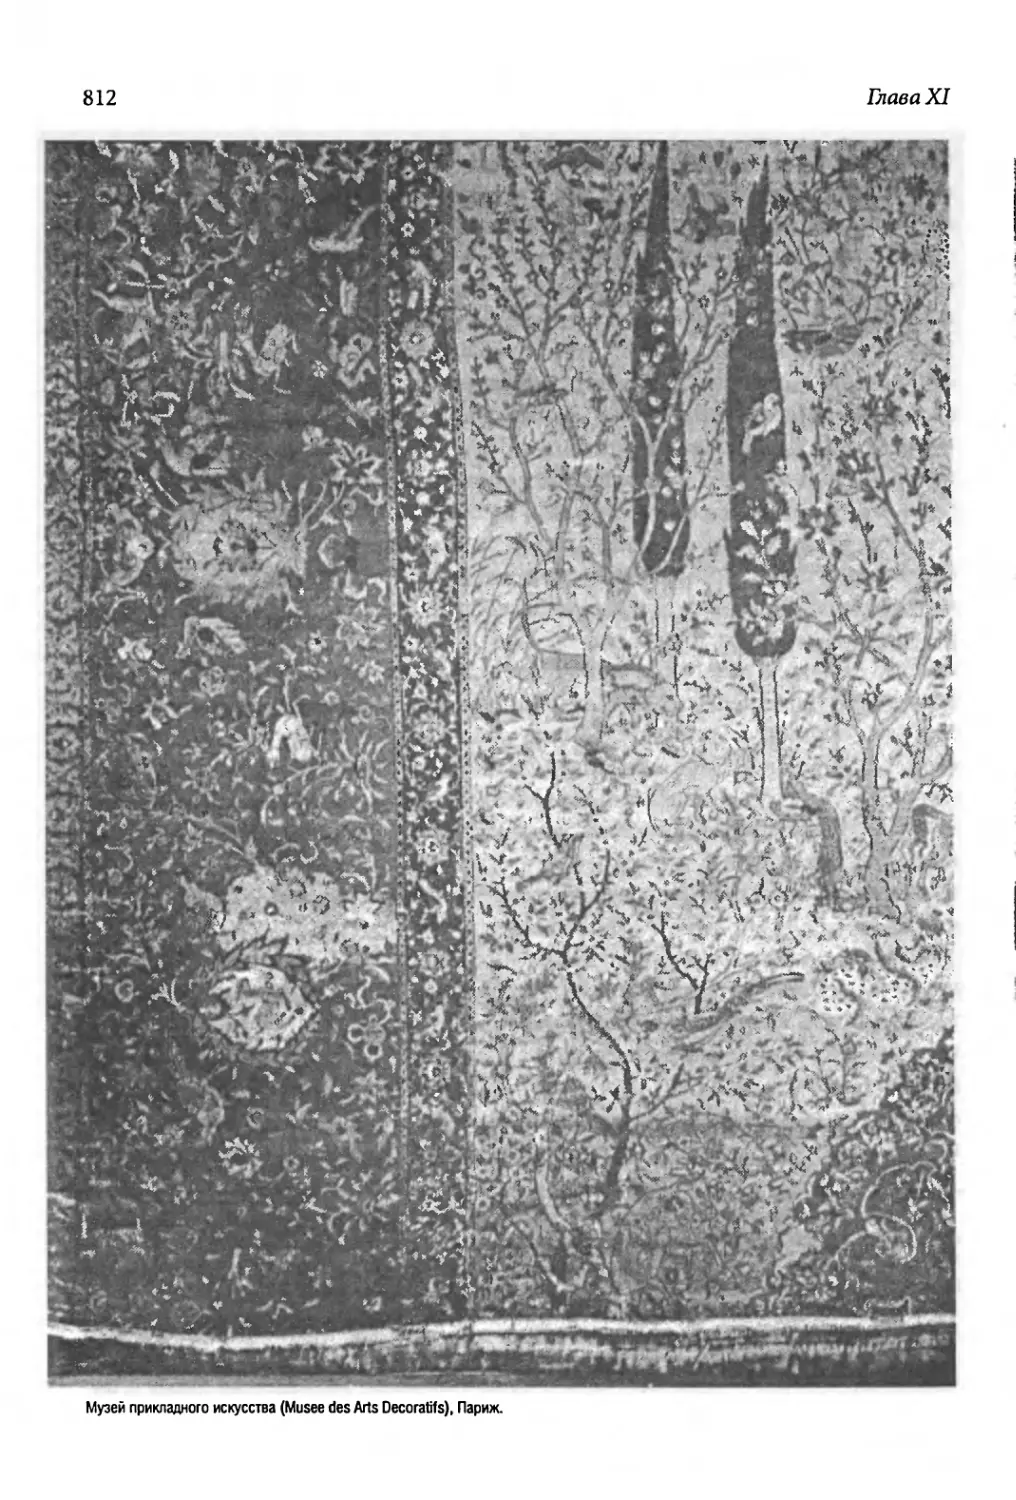 Персидский ковер и индийское окно [812-813]